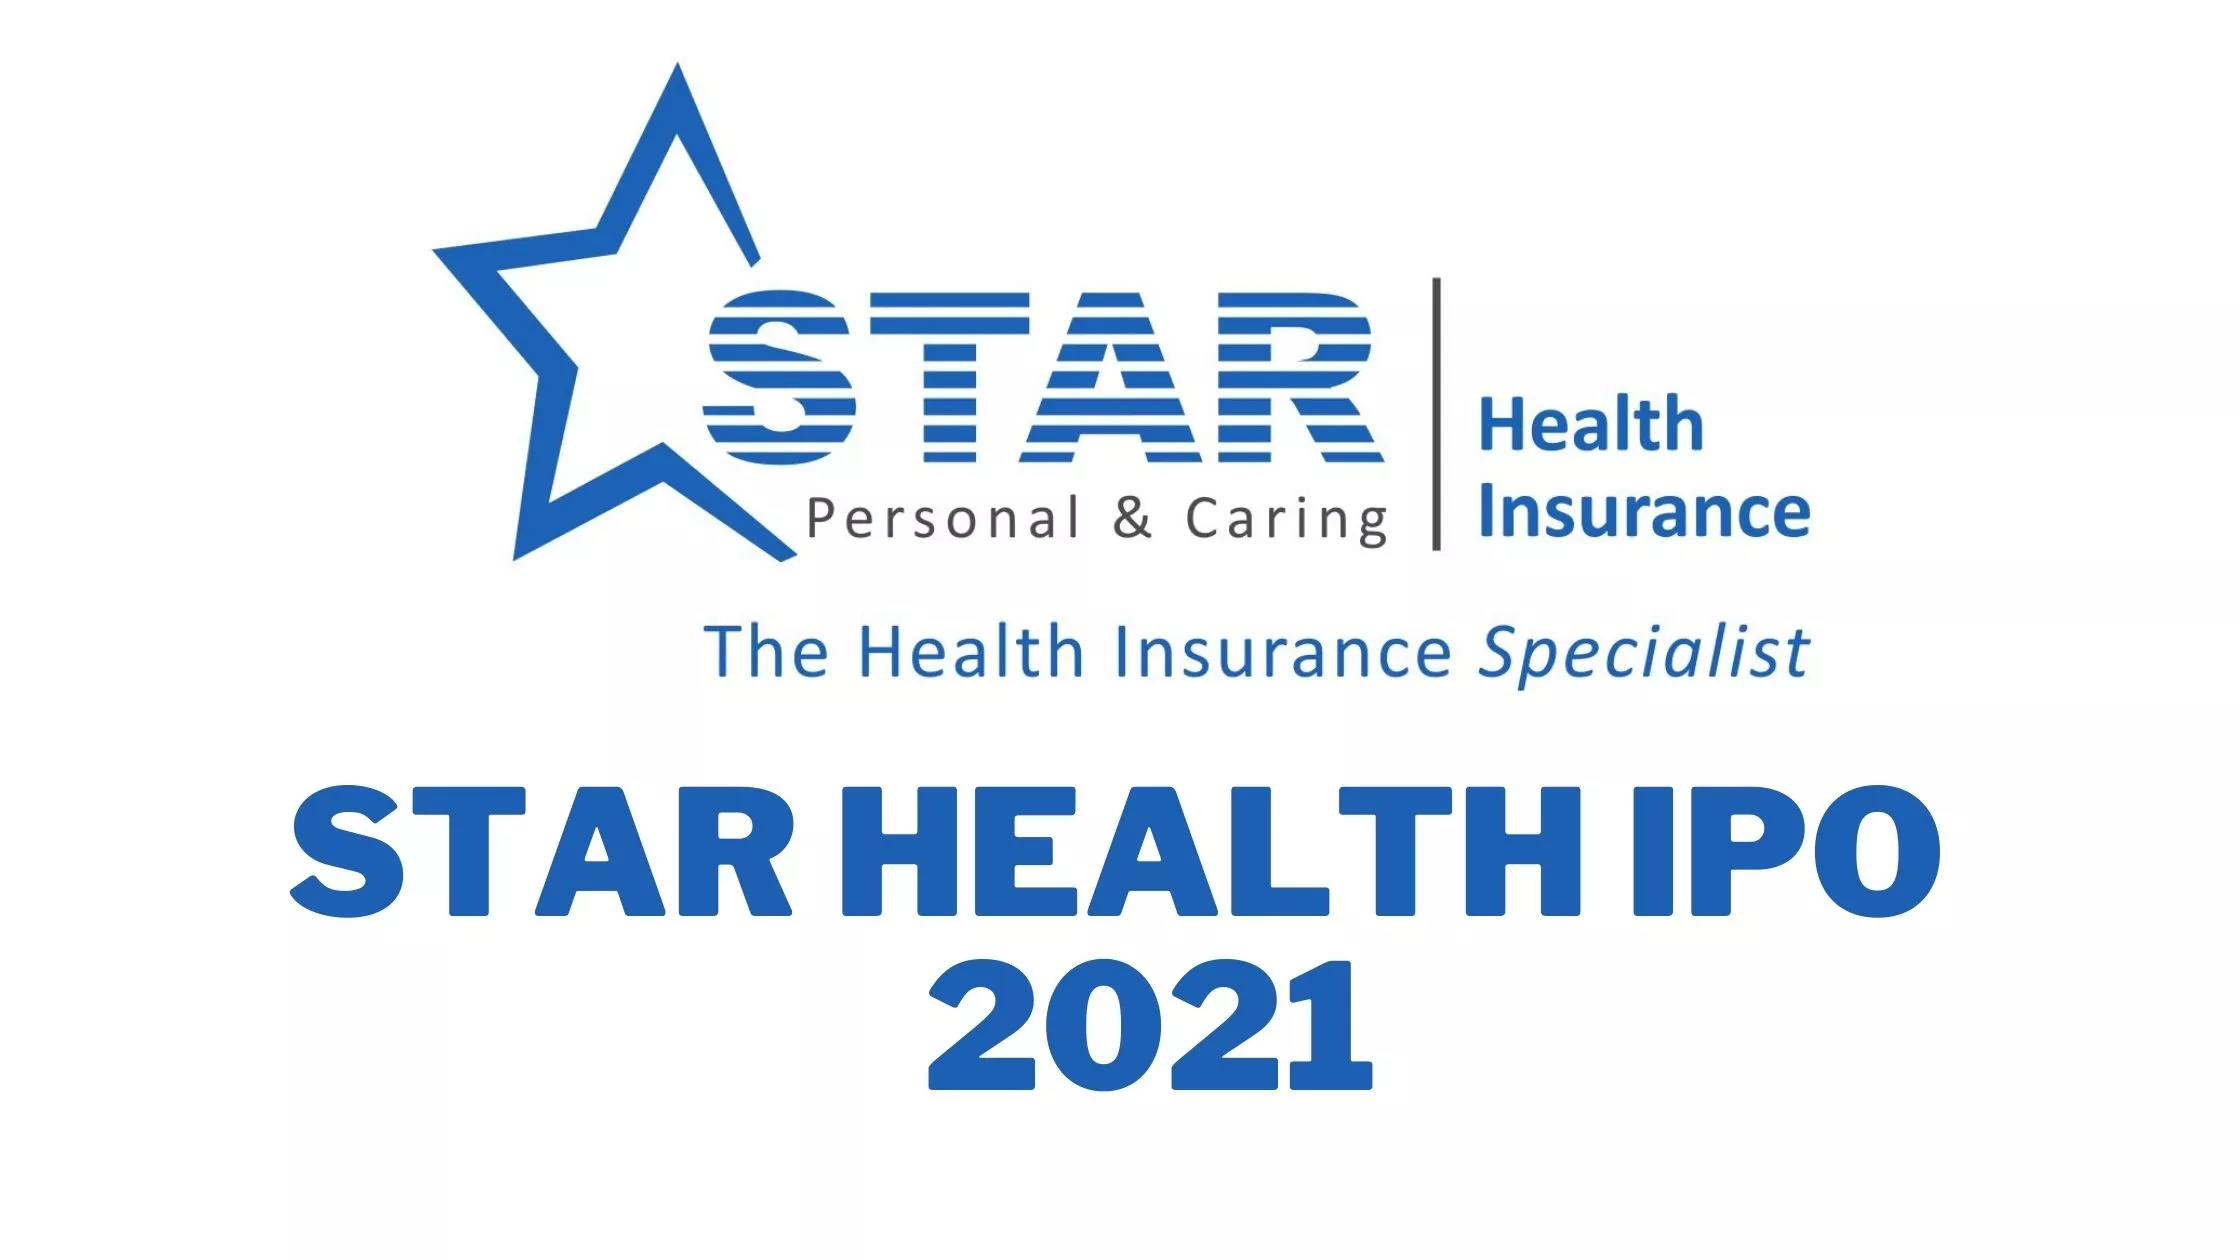 राकेश झुनझुनवाला के निवेश वाली कंपनी का खुला Star Health IPO